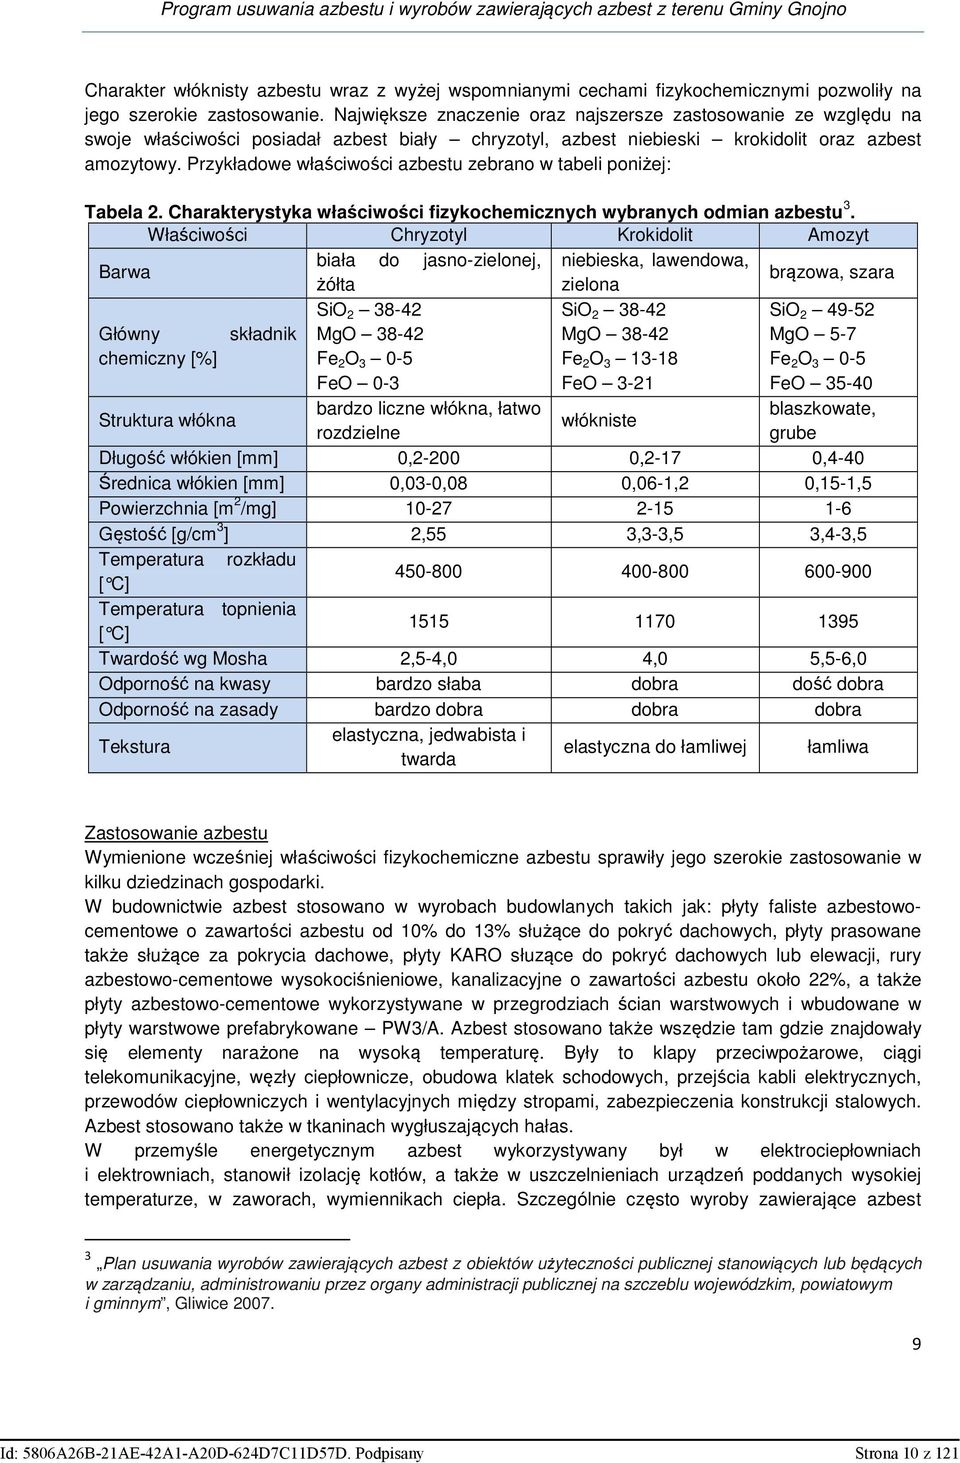 Przykładowe właściwości azbestu zebrano w tabeli poniżej: Tabela 2. Charakterystyka właściwości fizykochemicznych wybranych odmian azbestu 3.